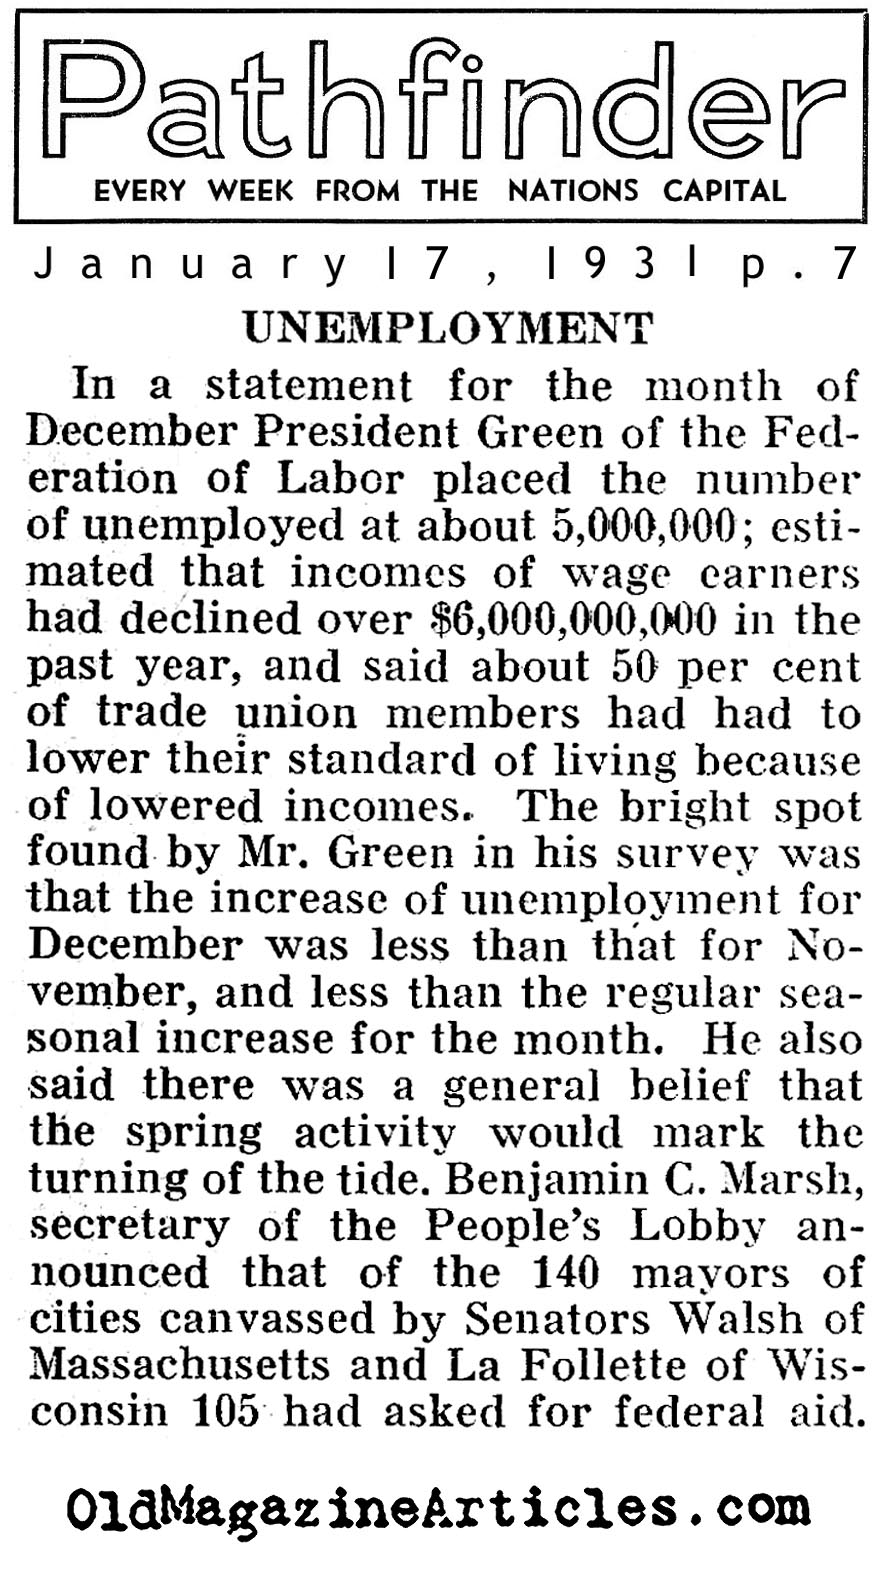 Unemployment Data for 1930 (Pathfinder Magazine,1930)